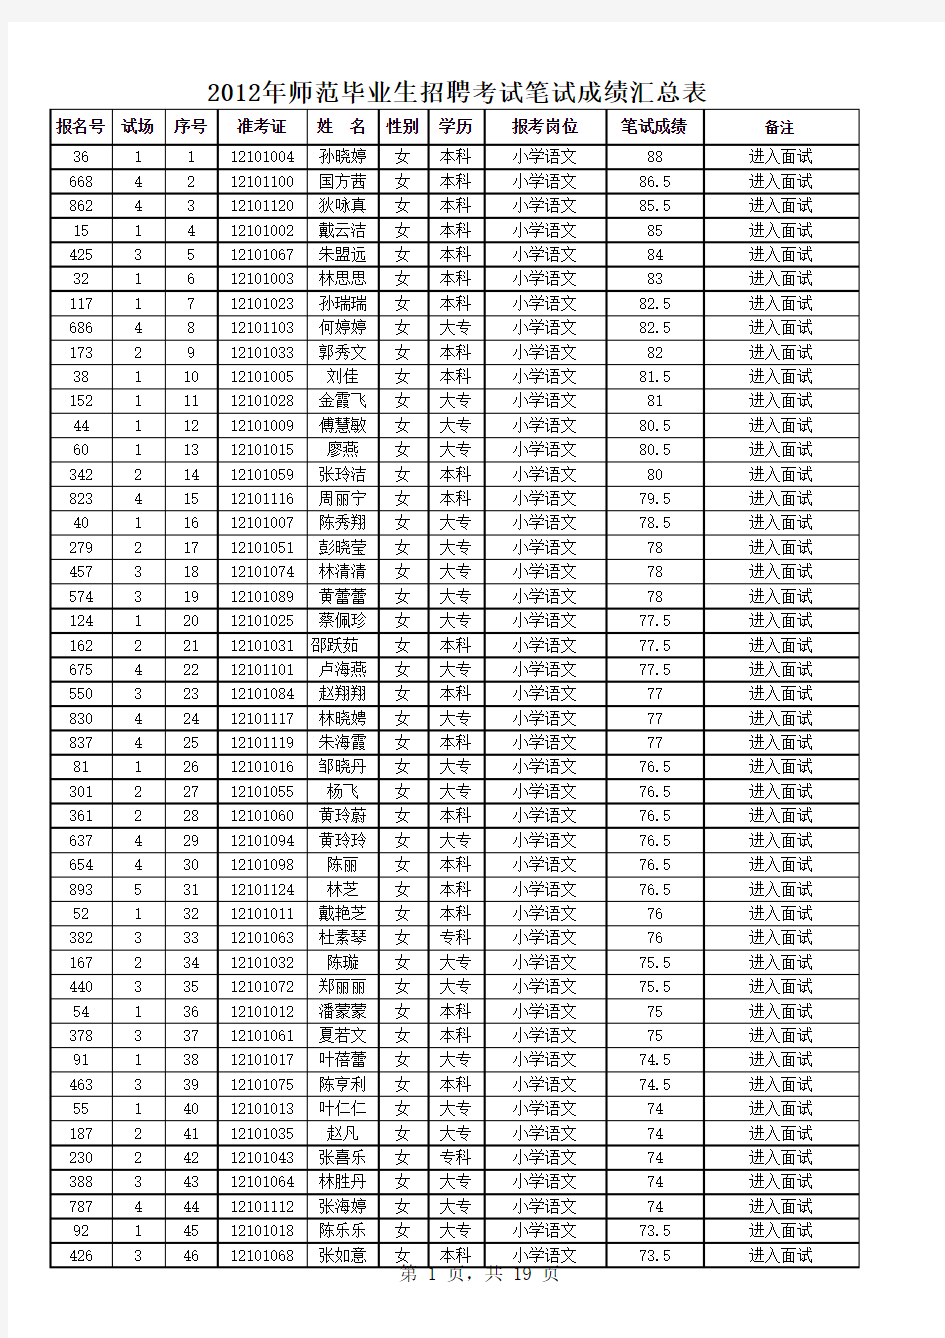 2012年教师招聘考试笔试成绩公示表